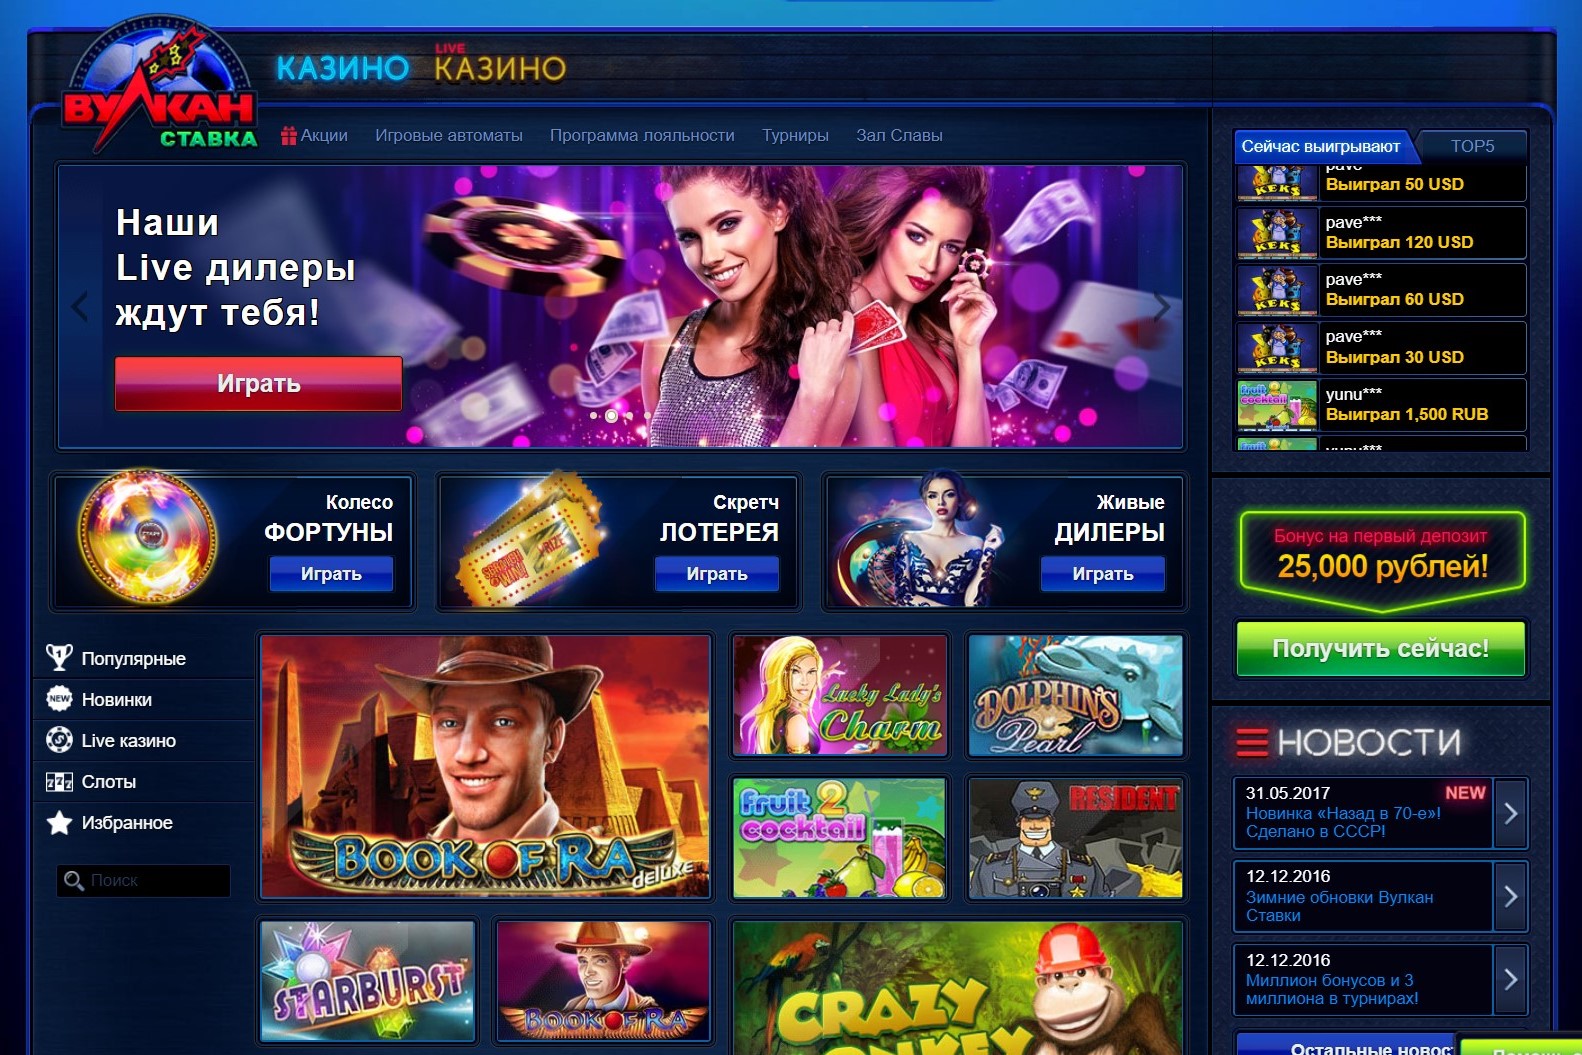 Вулкан казино официальный сайт - играть в игровые автоматы Vulcan на реально деньги онлайн